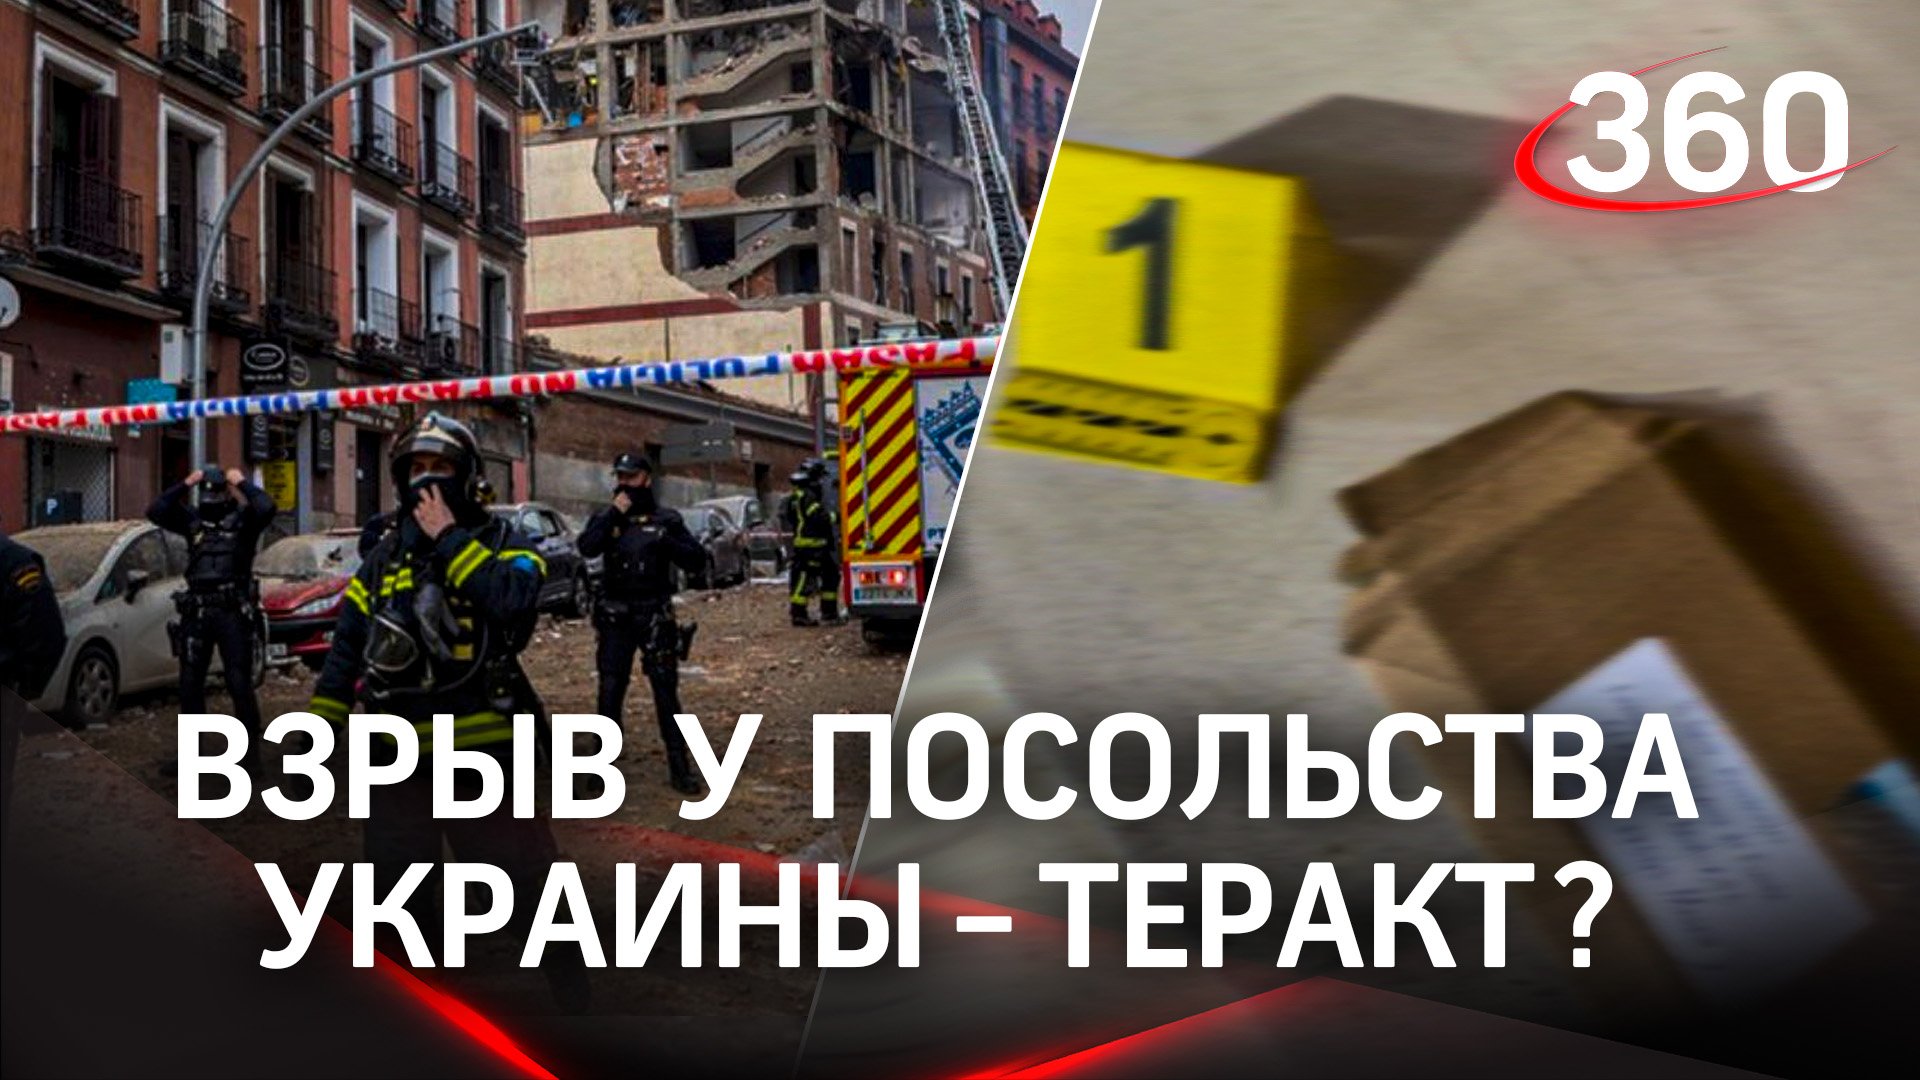 Опасная посылка: суд Испании рассмотрит взрыв у посольства Украины как теракт